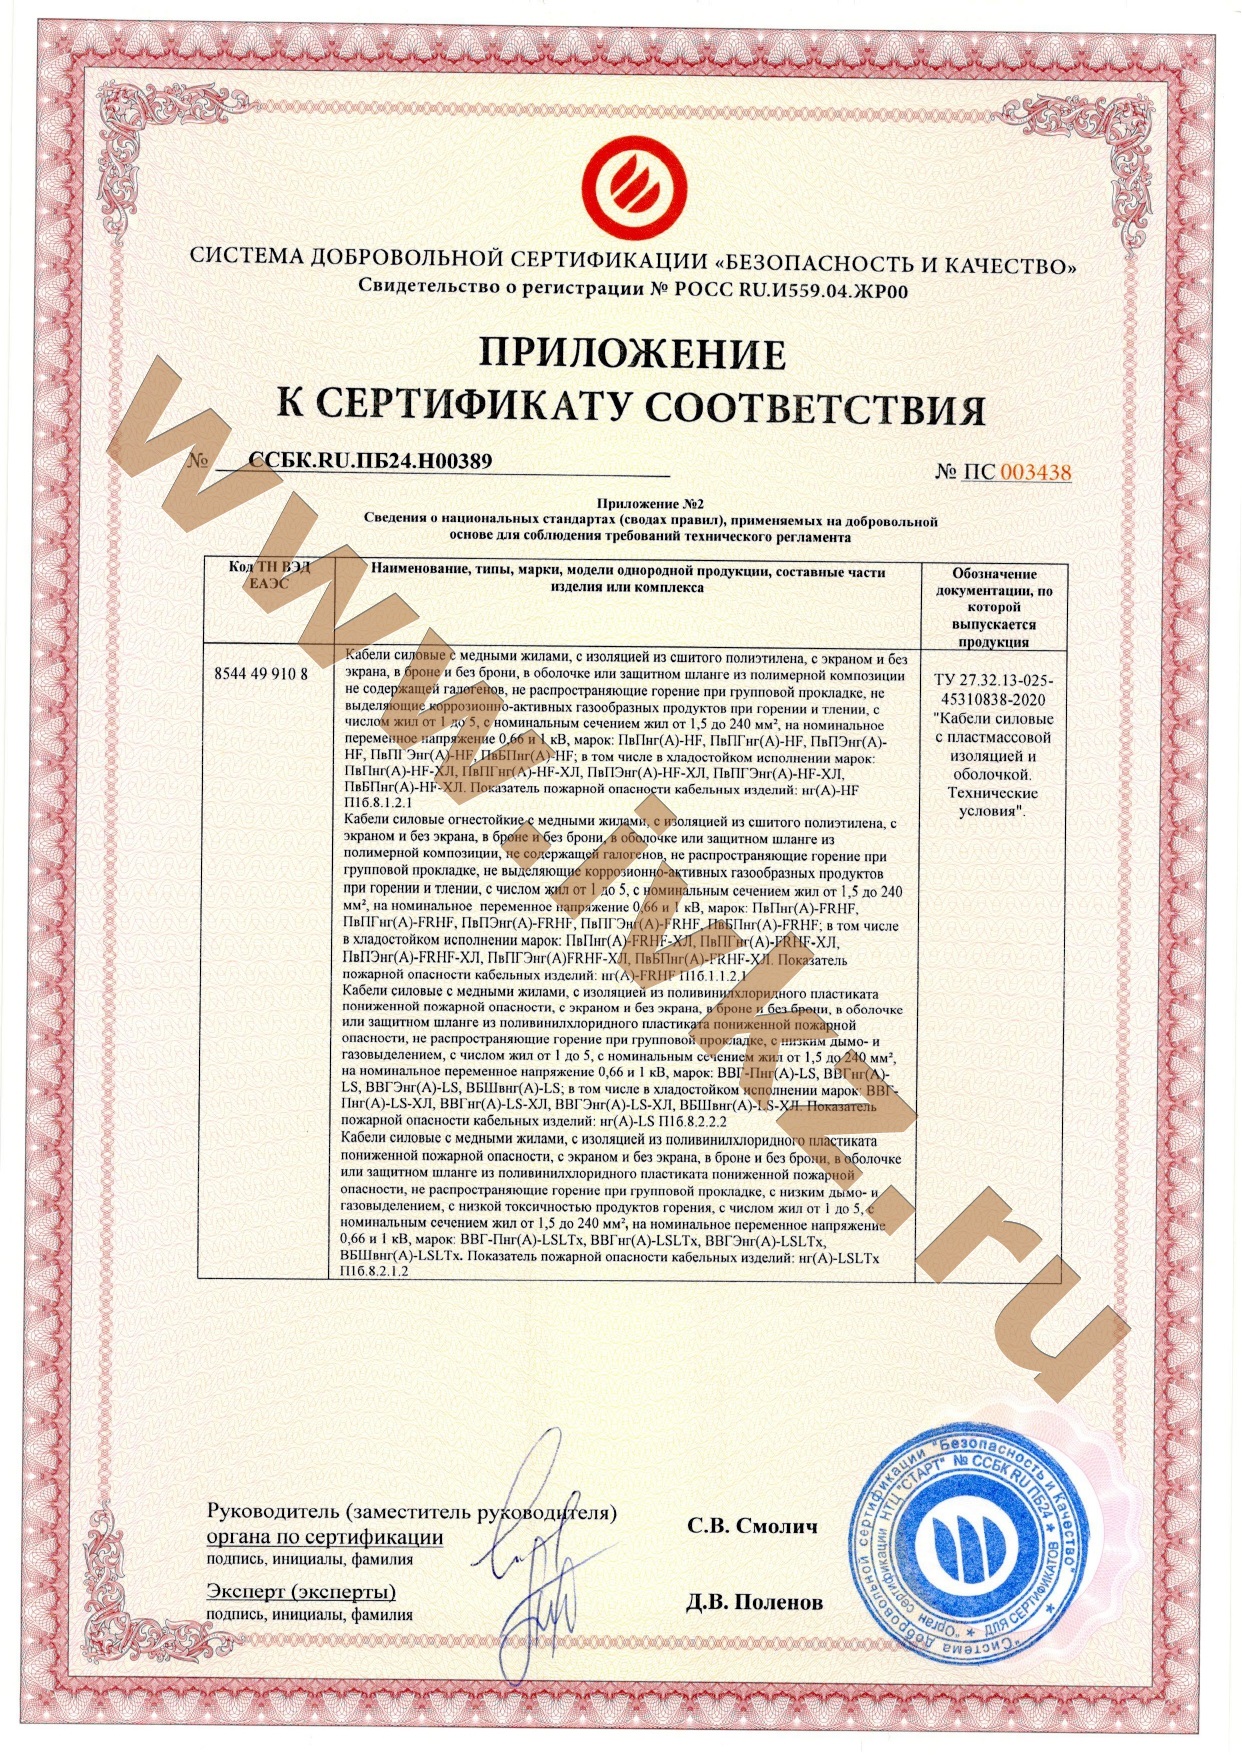 Ивановский кабельный завод сертификат соответствия. Не распространяющий горение при групповой прокладке